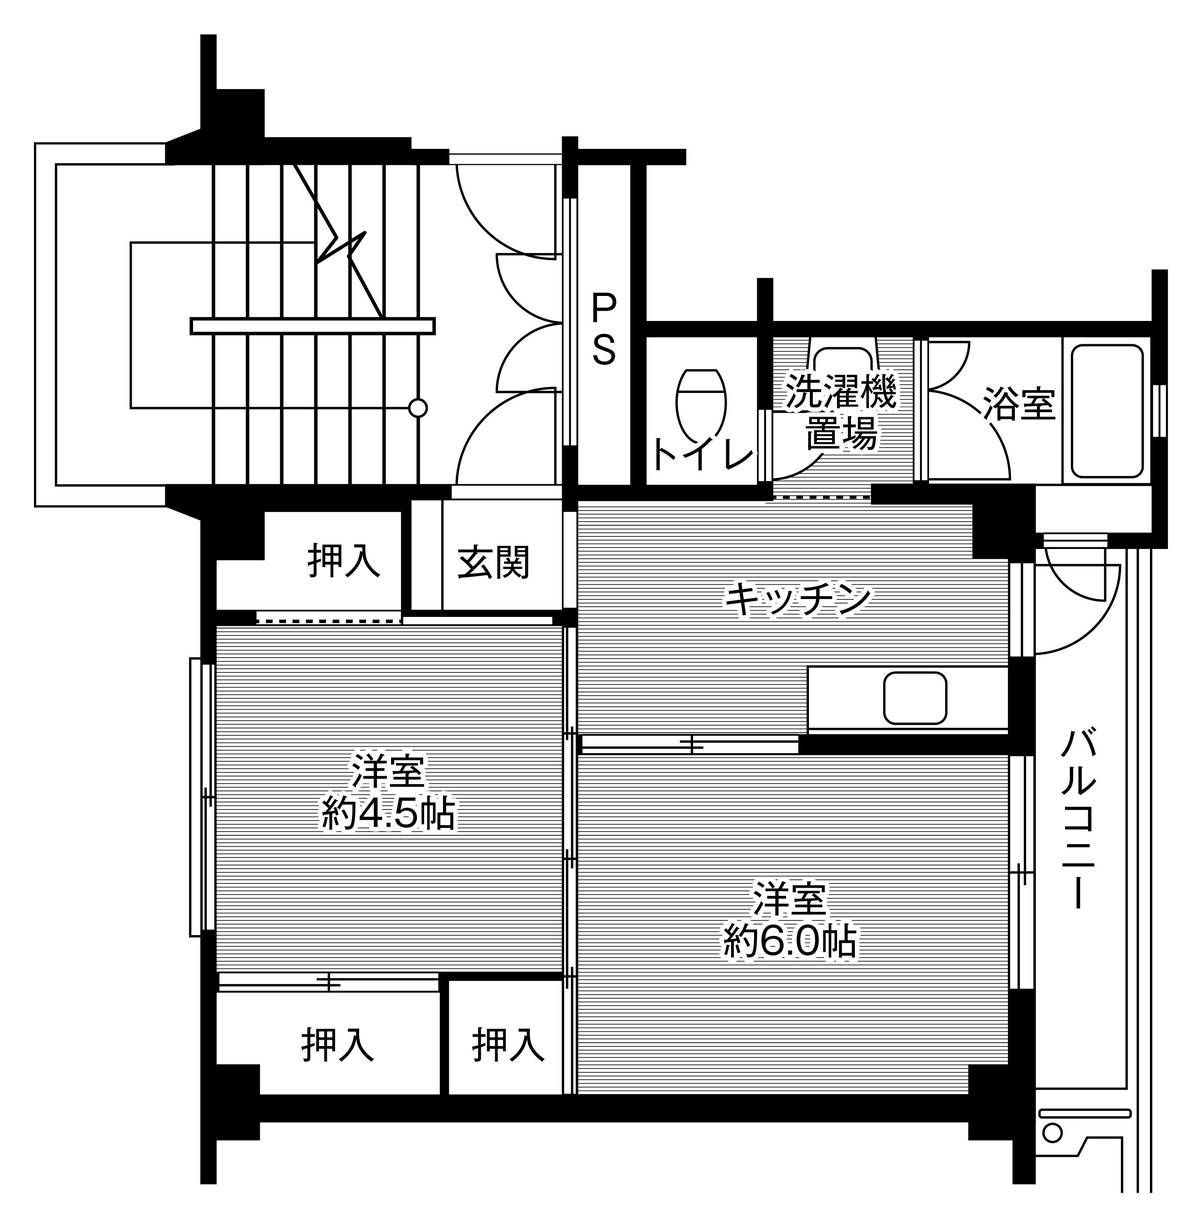 Sơ đồ phòng 2K của Village House Yukimatsu ở Echizen-shi